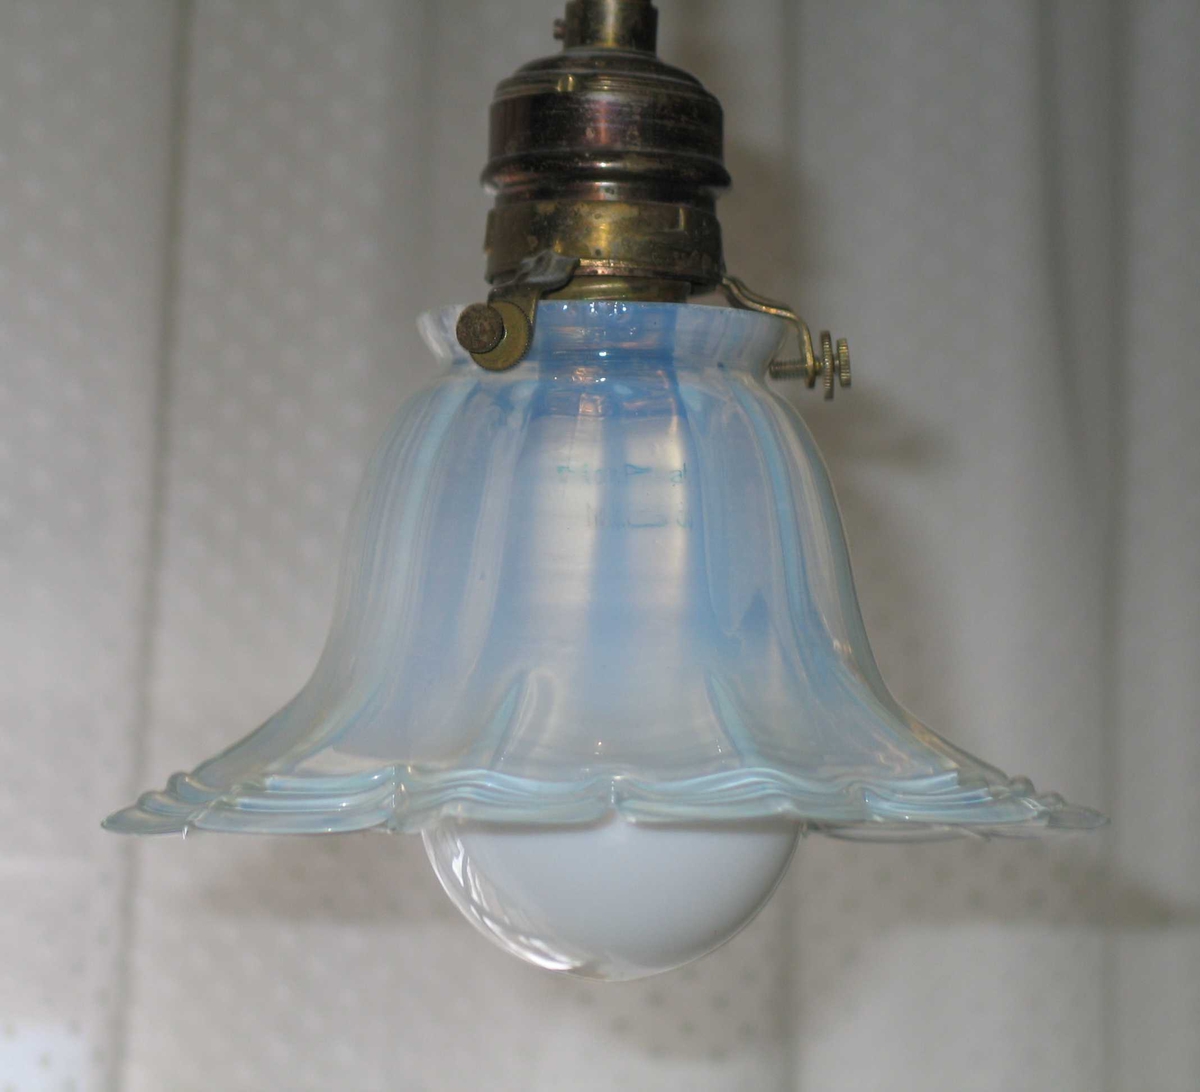 Liten taklampe med klokkeformet glasskjerm. Skjermen er gjennomsiktig melkehvit med blåskjer.